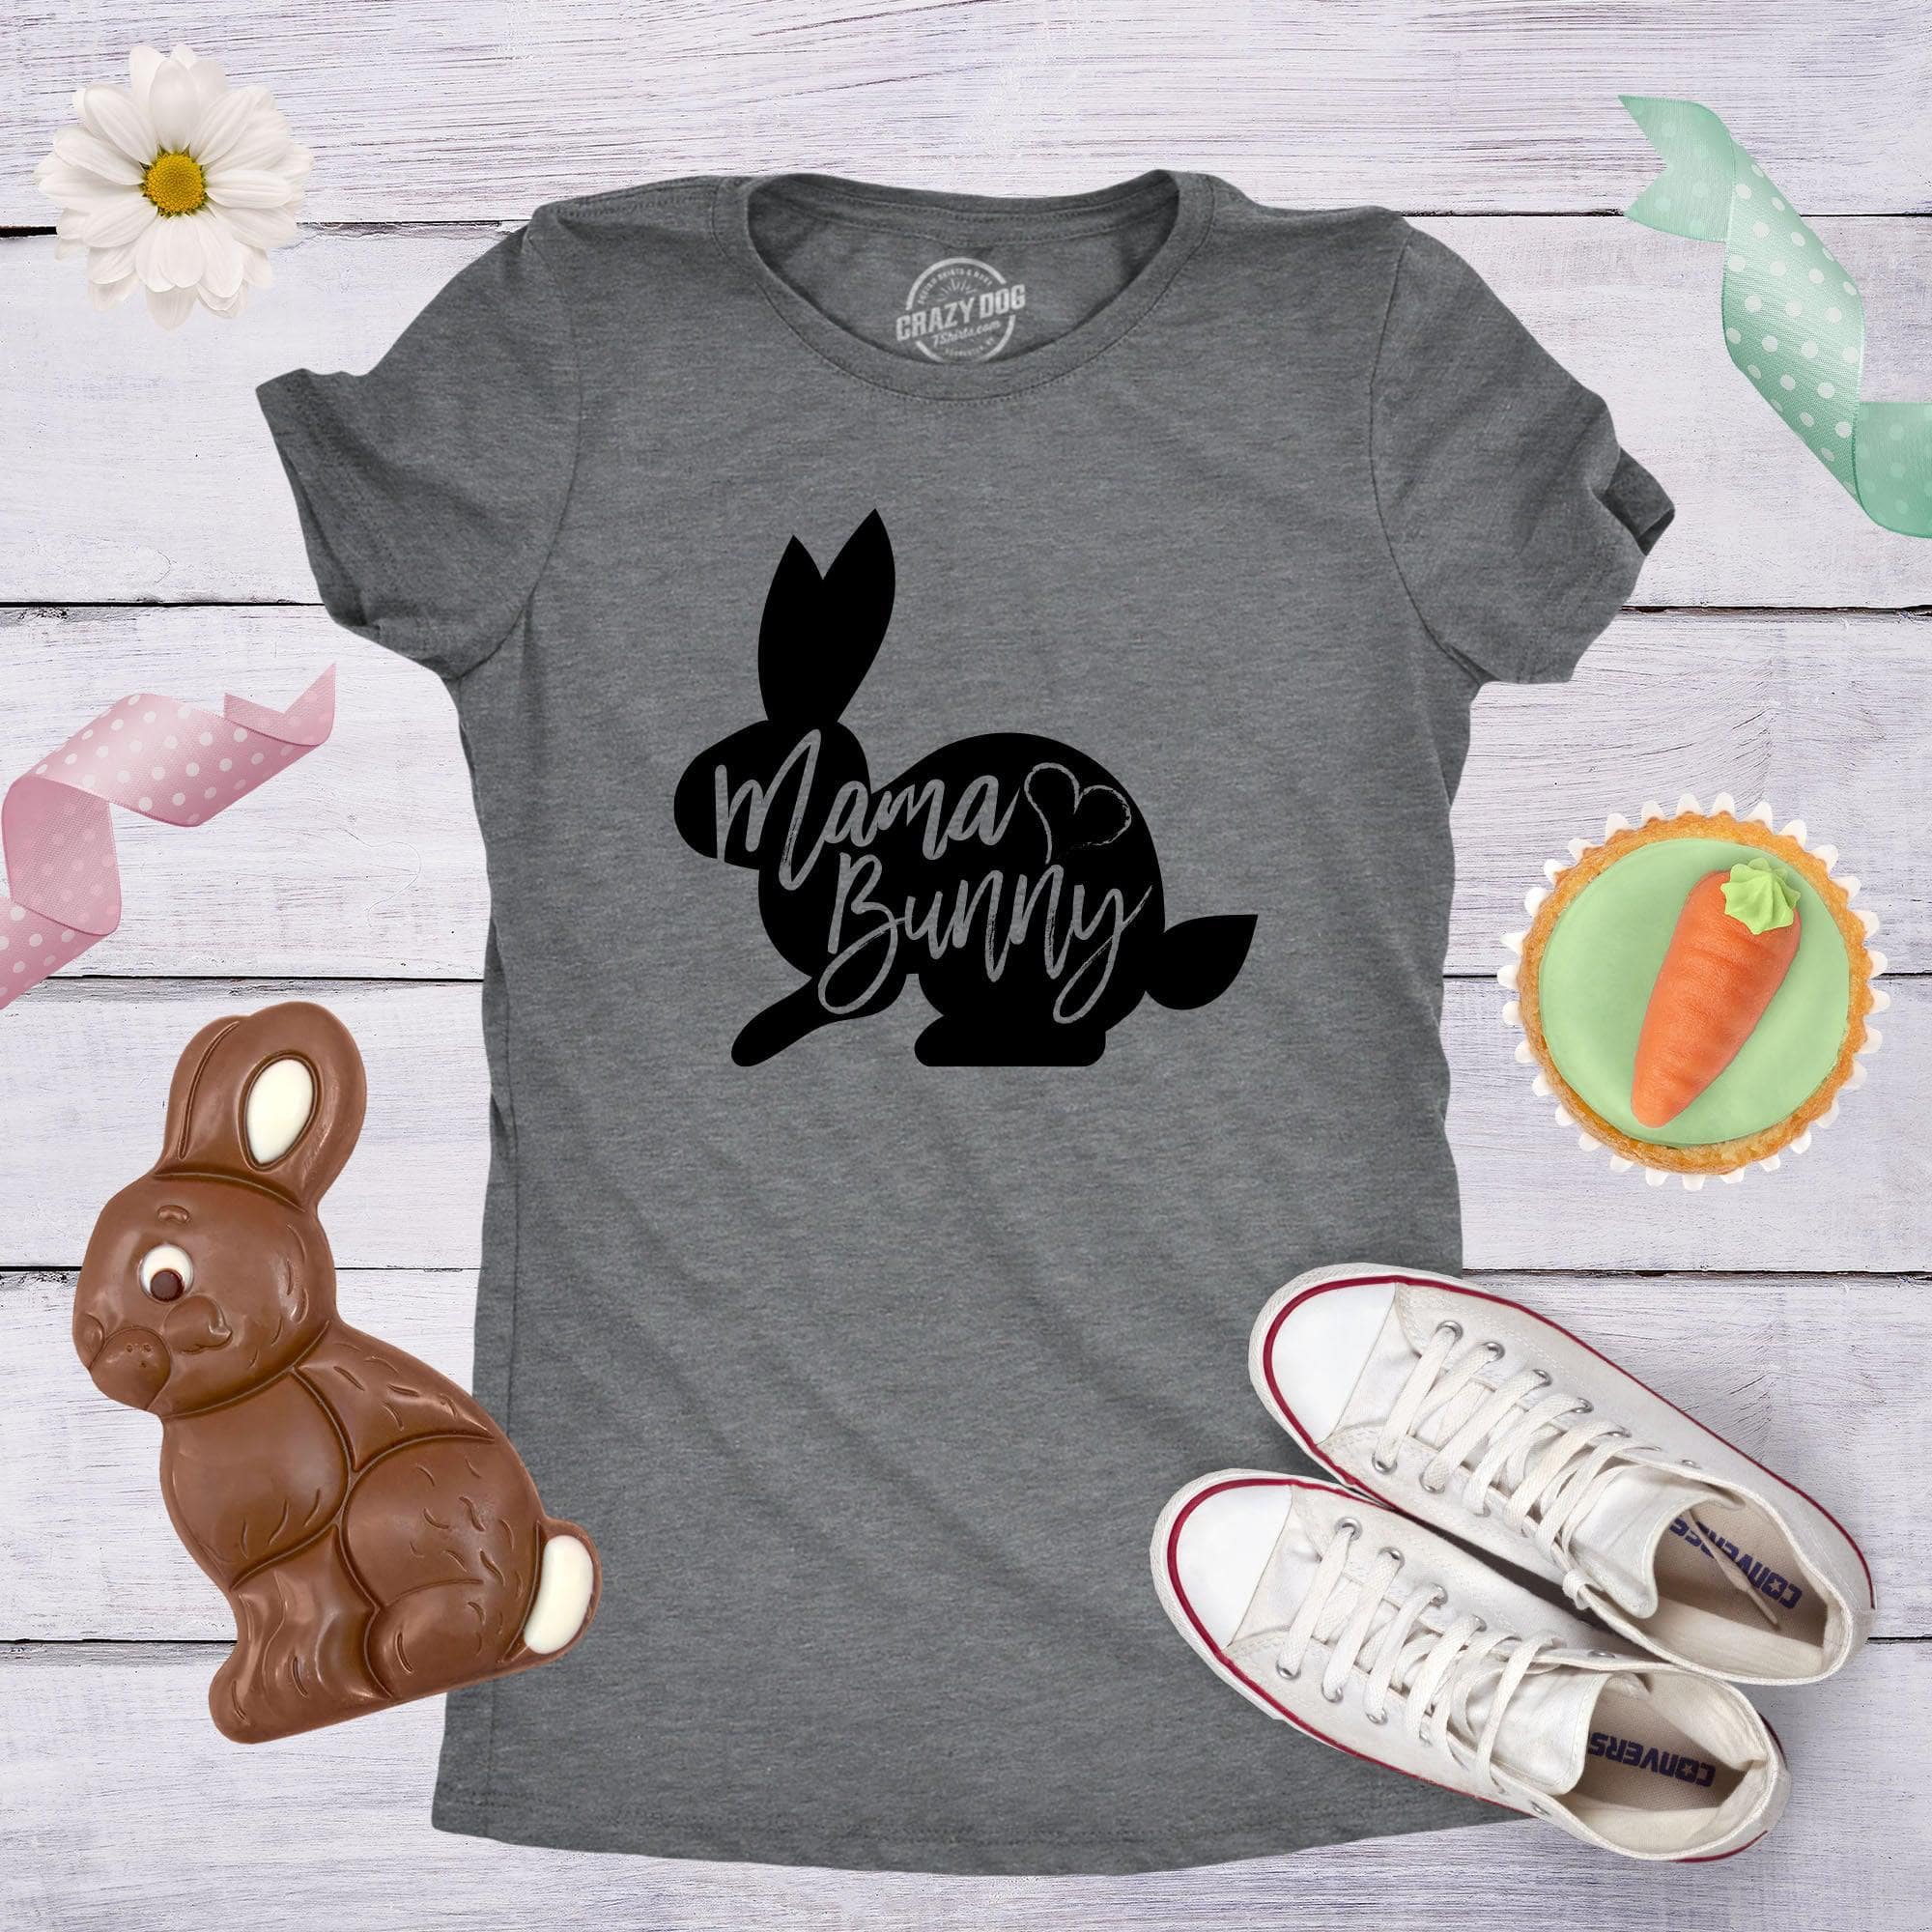 https://cdn.shopify.com/s/files/1/2959/1448/products/crazy-dog-t-shirts-womens-t-shirts-mama-bunny-women-s-tshirt-29473967046771_2000x.jpg?v=1647453835